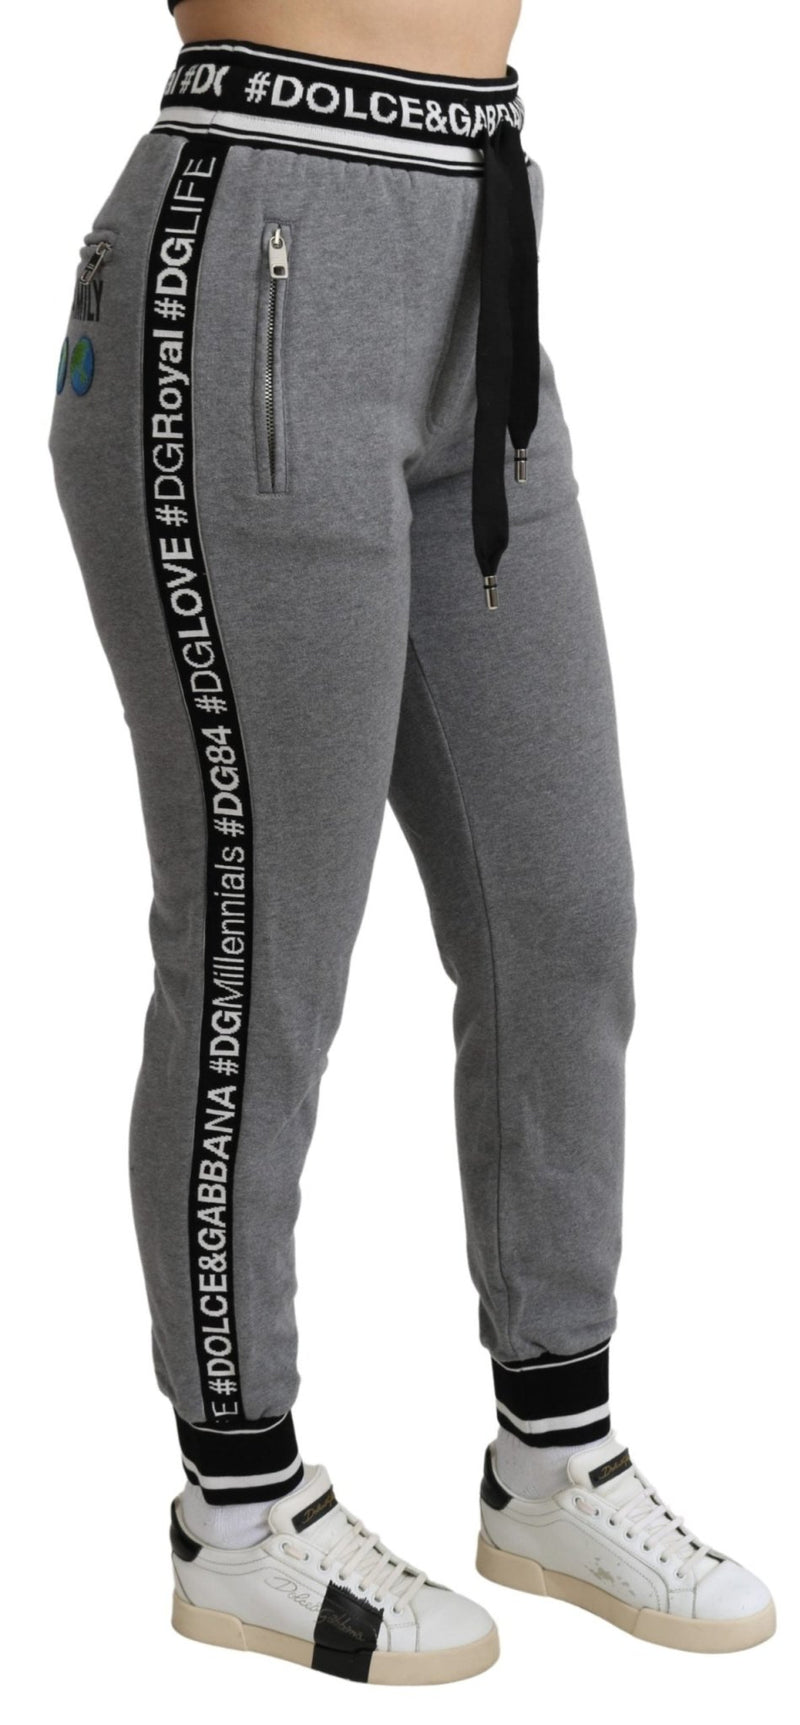 Gray #DGFamily Jogging Trouser Cotton Pants - Avaz Shop